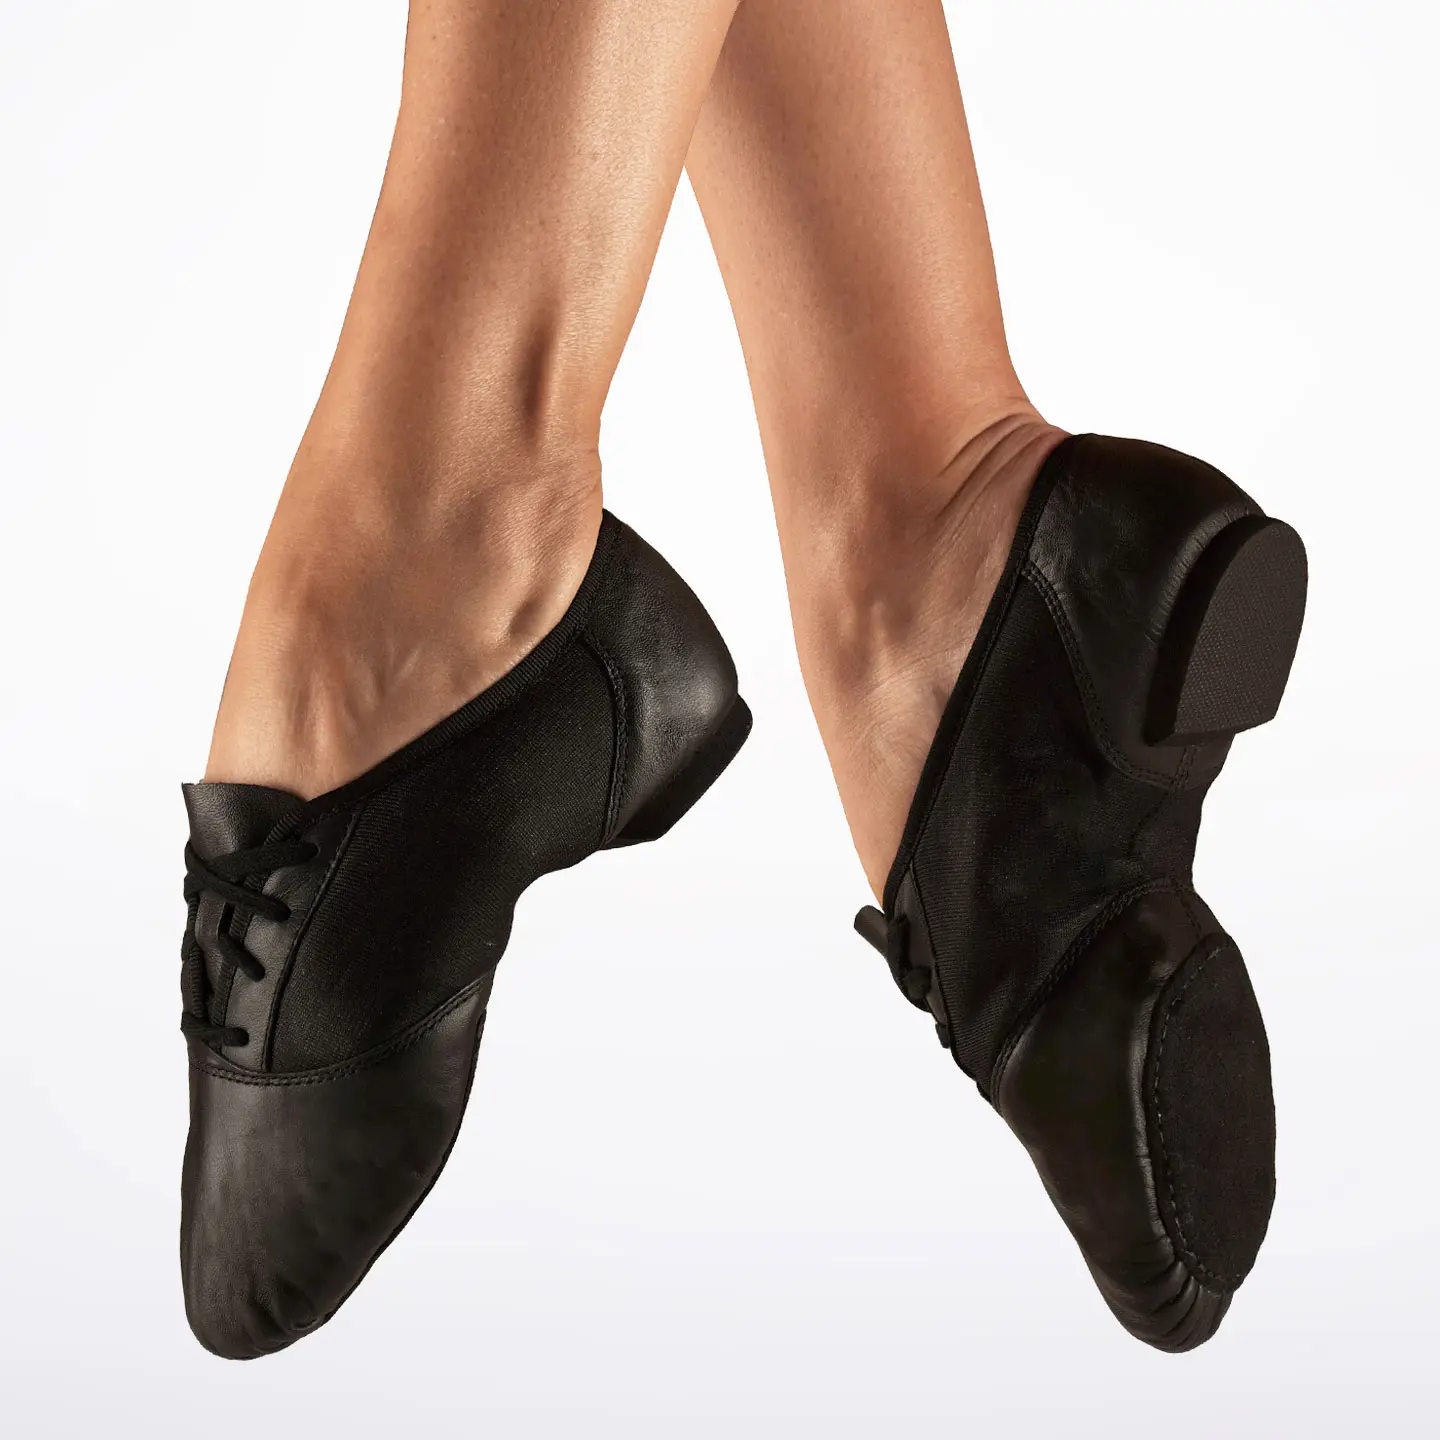 Capezio dance shoes